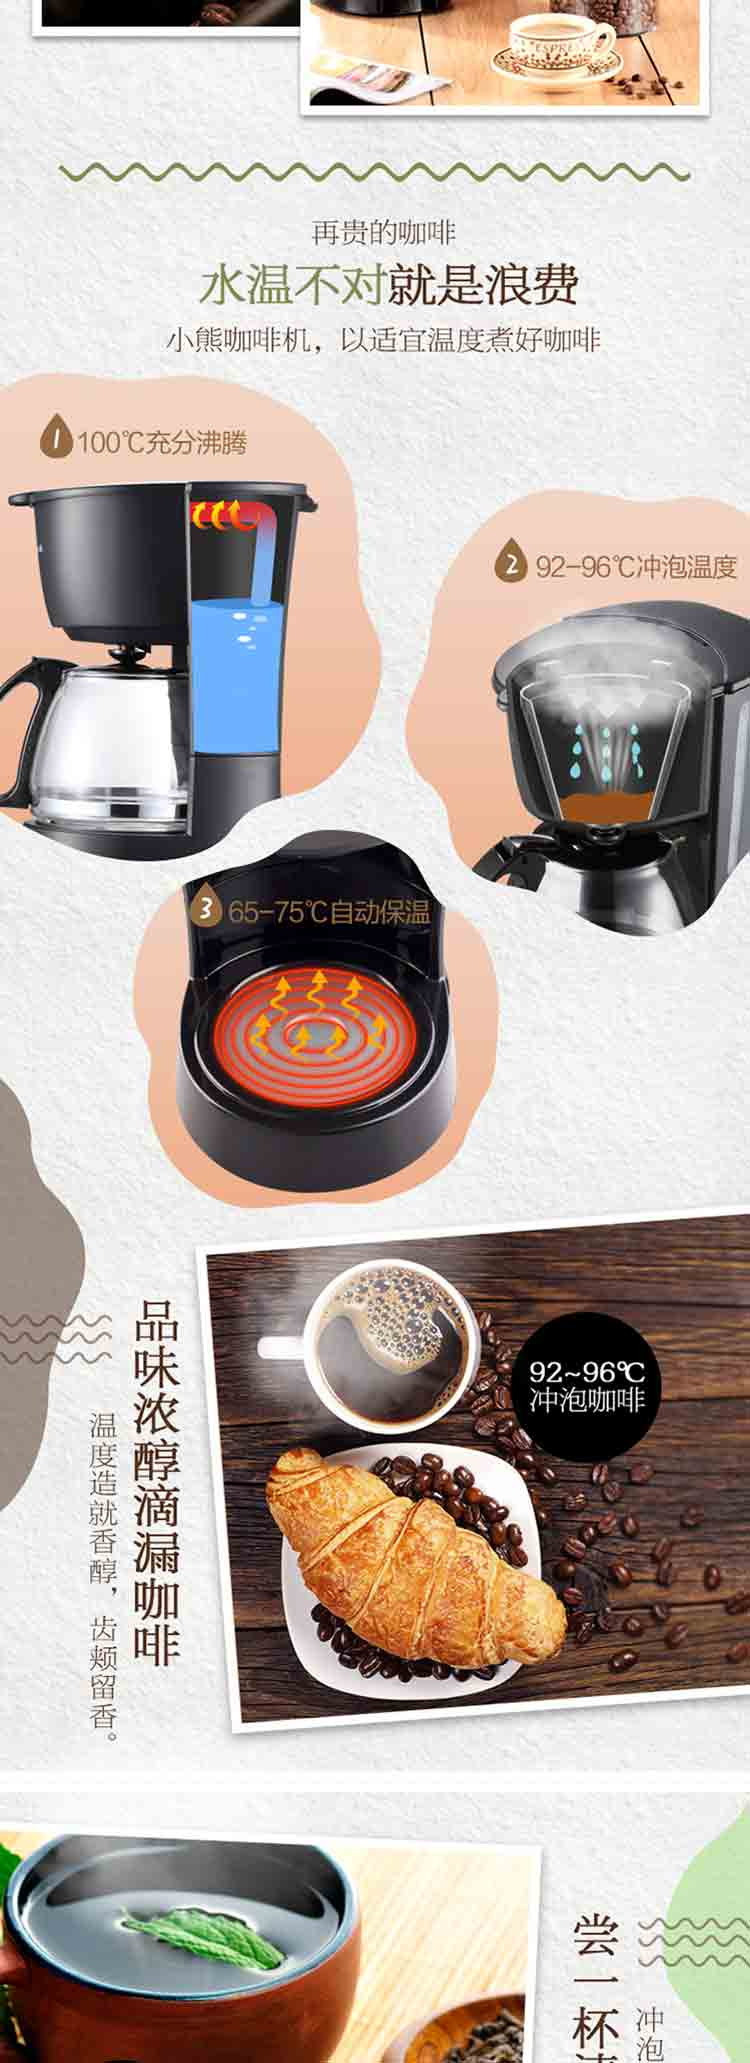 小熊 KFJ-403 美式咖啡机家用 滴漏式小型迷你煮咖啡壶 600ml